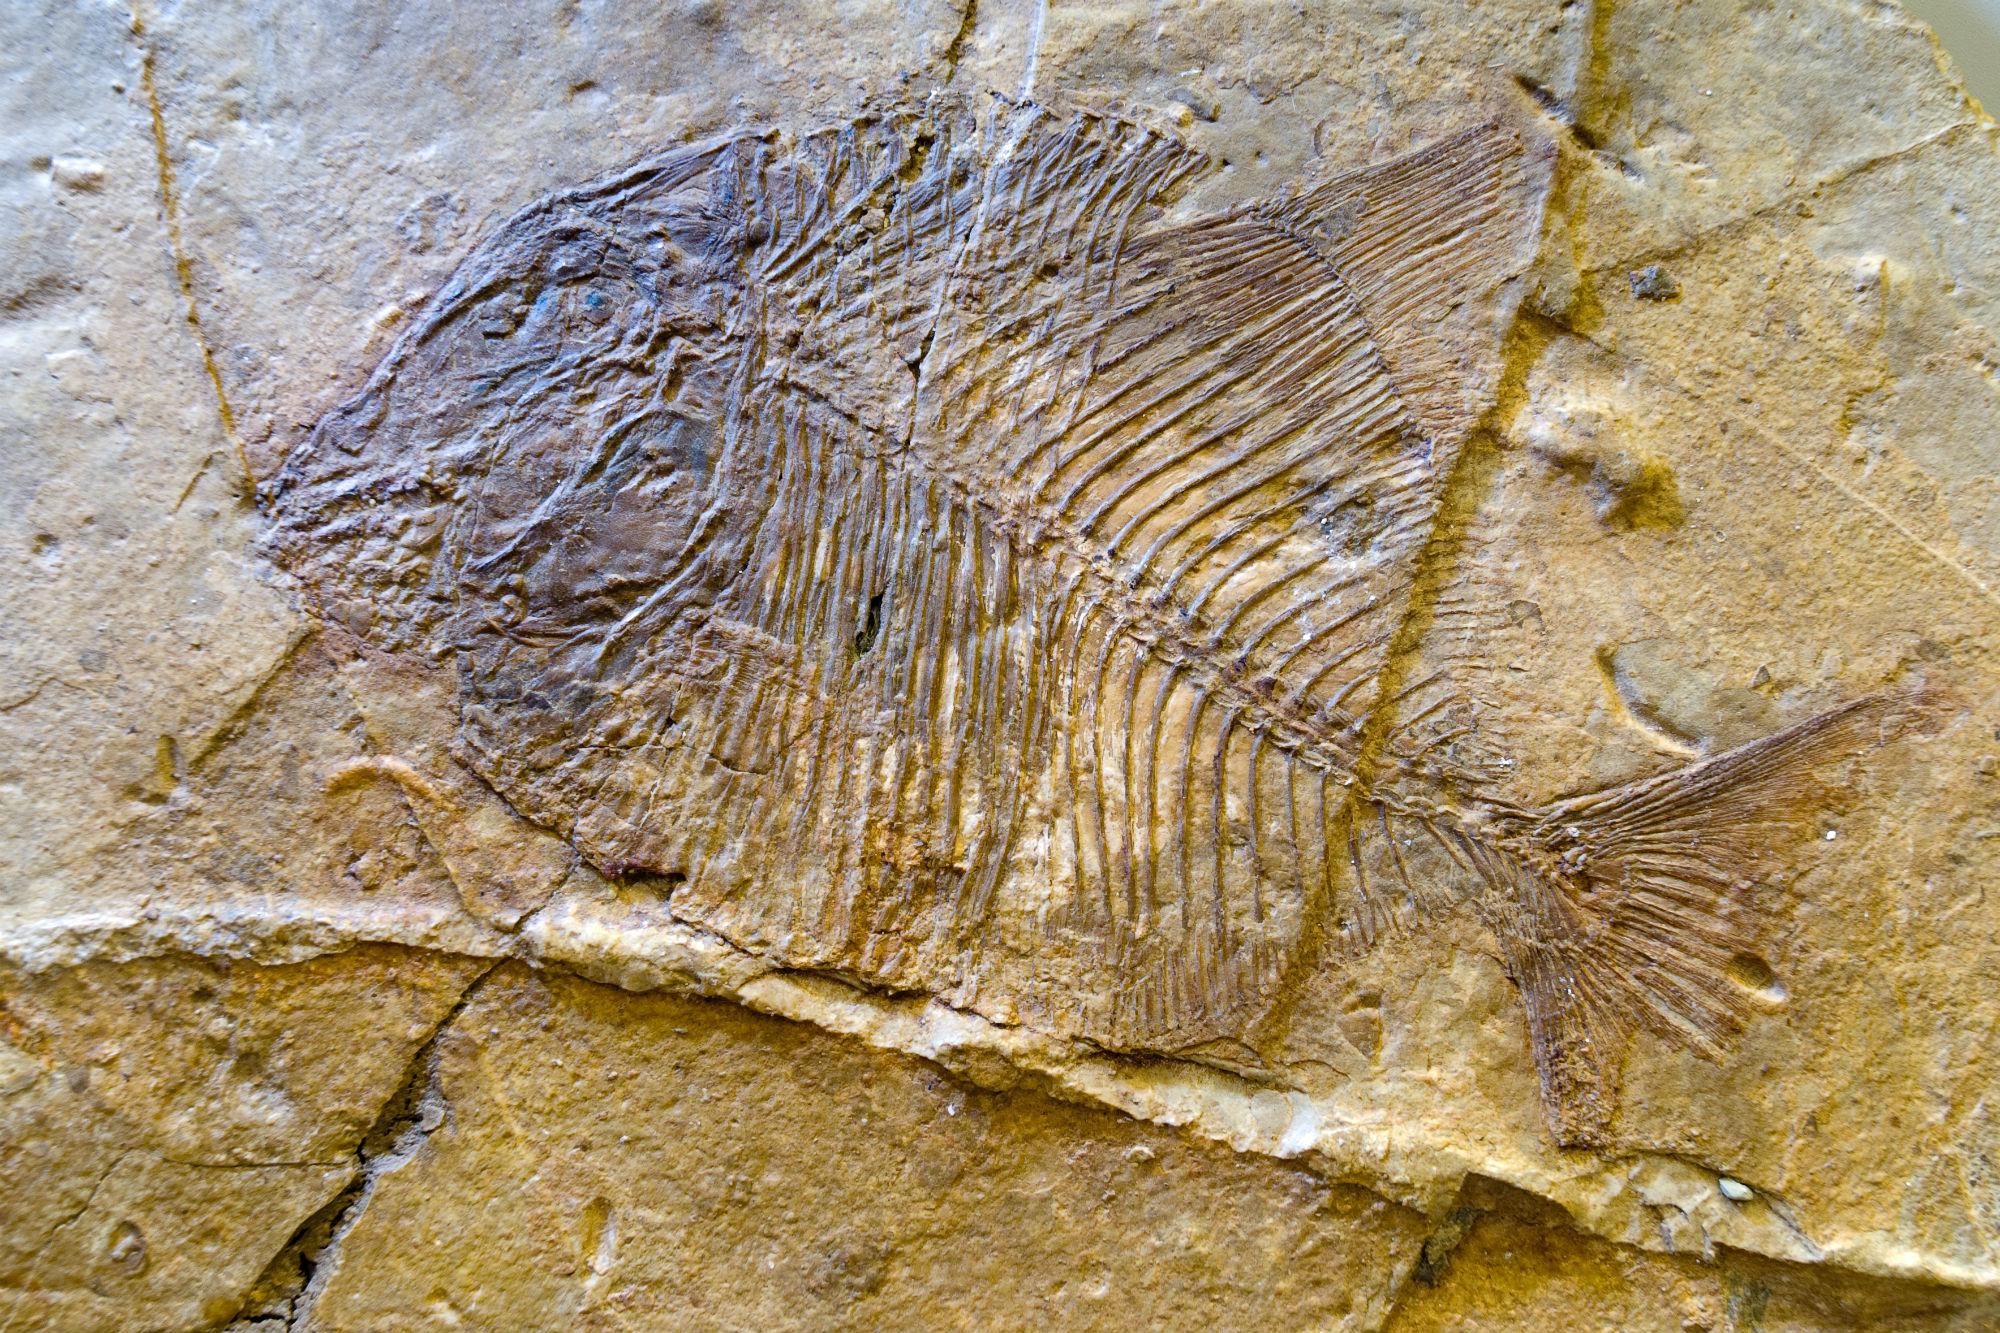 Pietraroja, un pesce fossile risalente al Cretacico inferiore (116-114 milioni di anni fa) (foto di Natalino Russo)